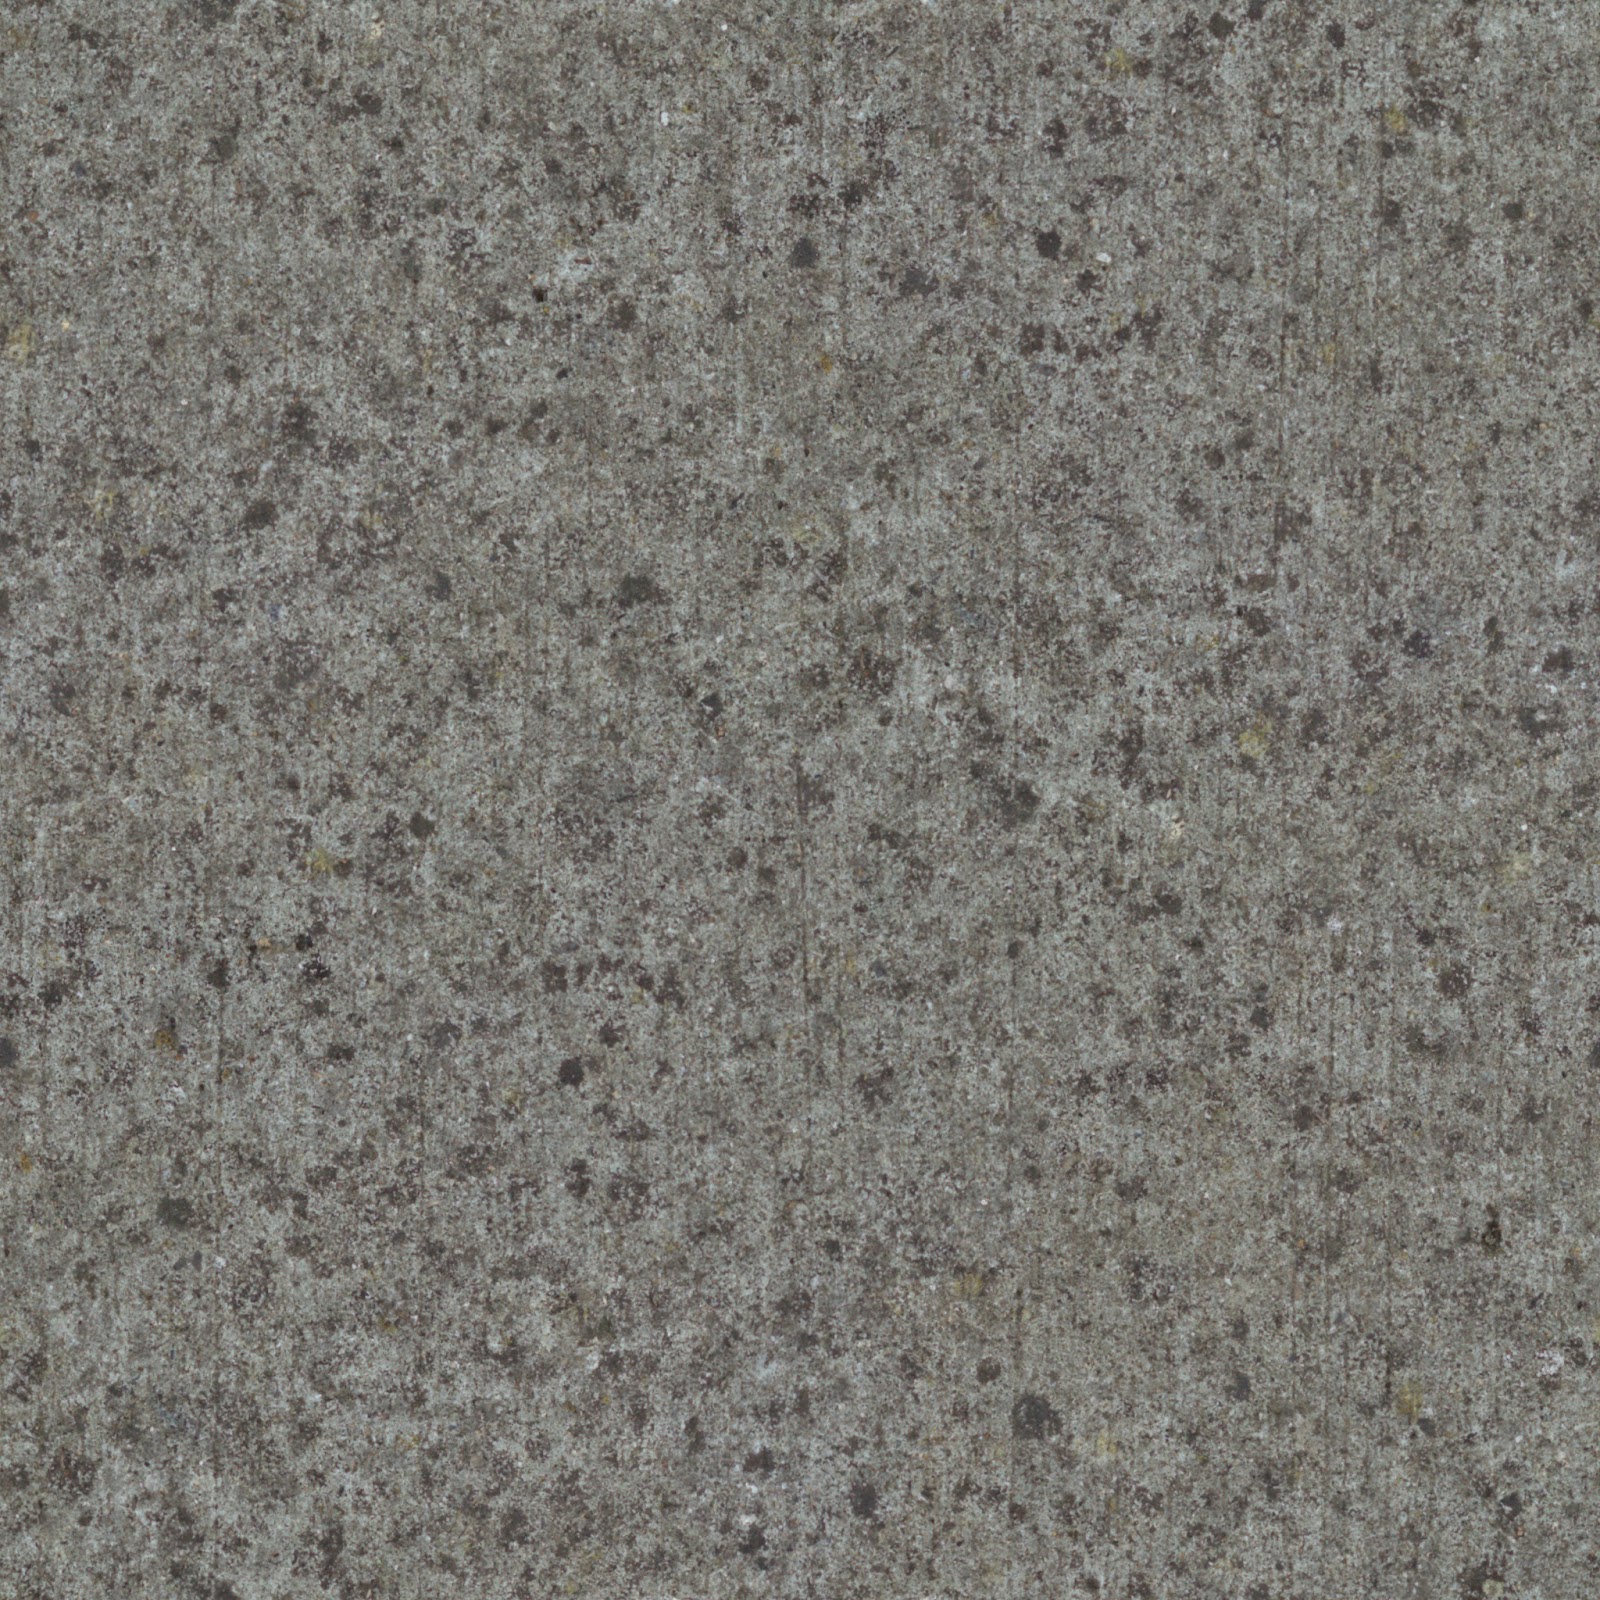 (Concrete 20) Beautiful granite concrete stone seamless texture 2048x2048